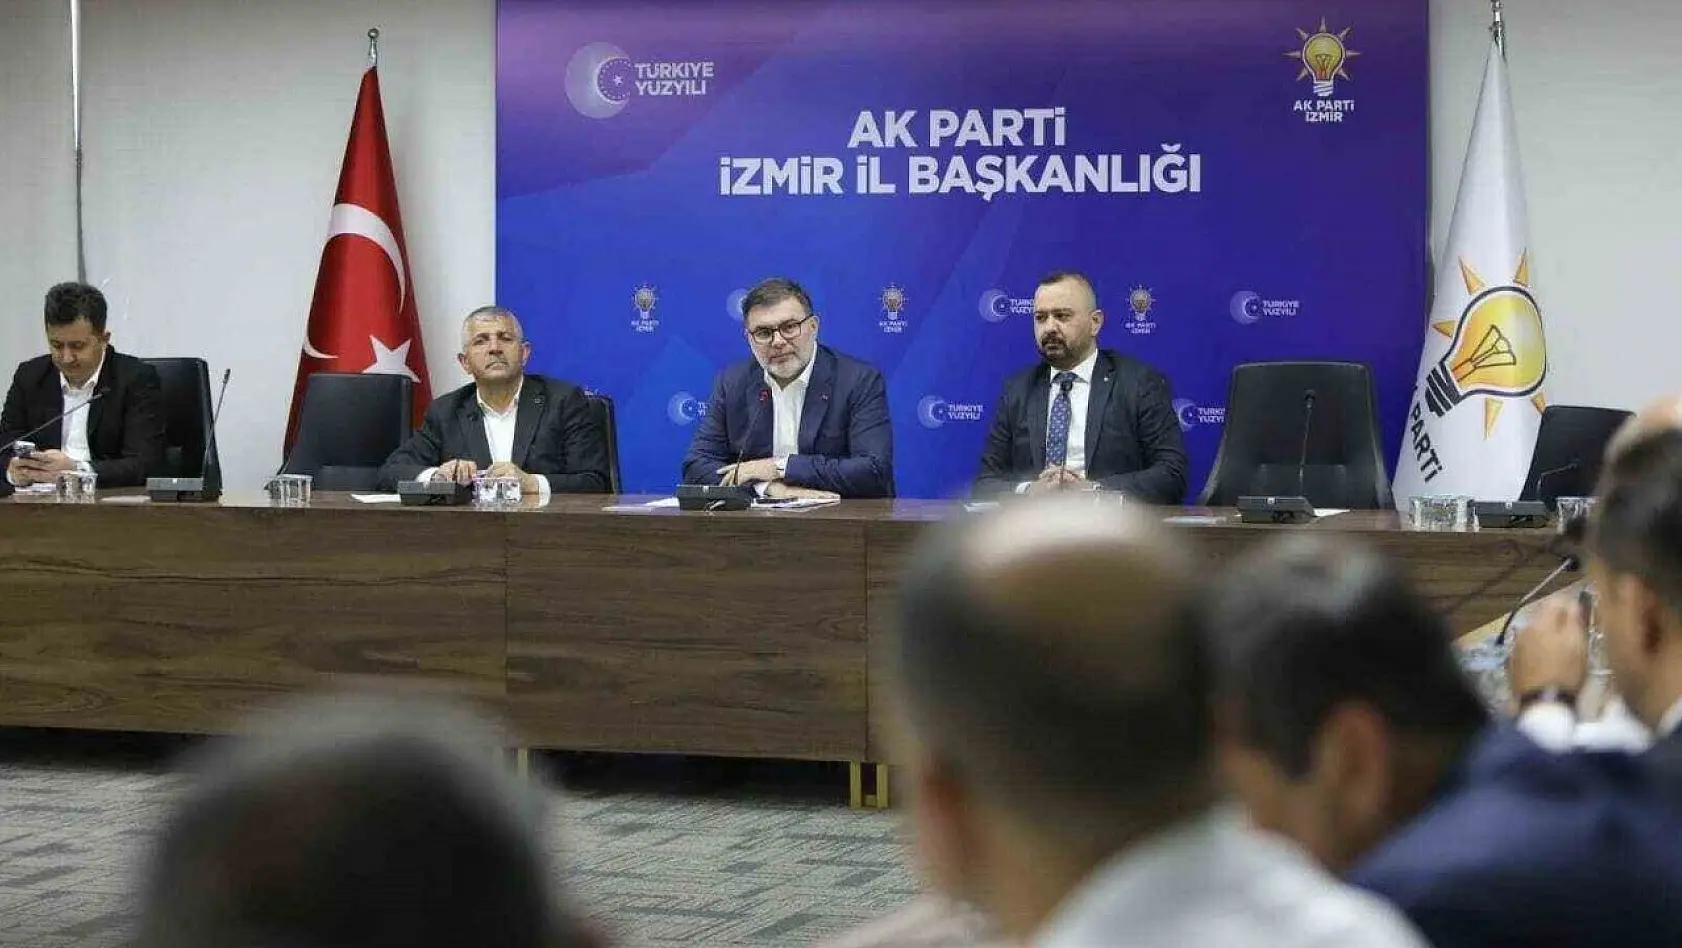 AK Parti İzmir İl Başkanı Saygılı: 'Kum saati işlemeye başladı'